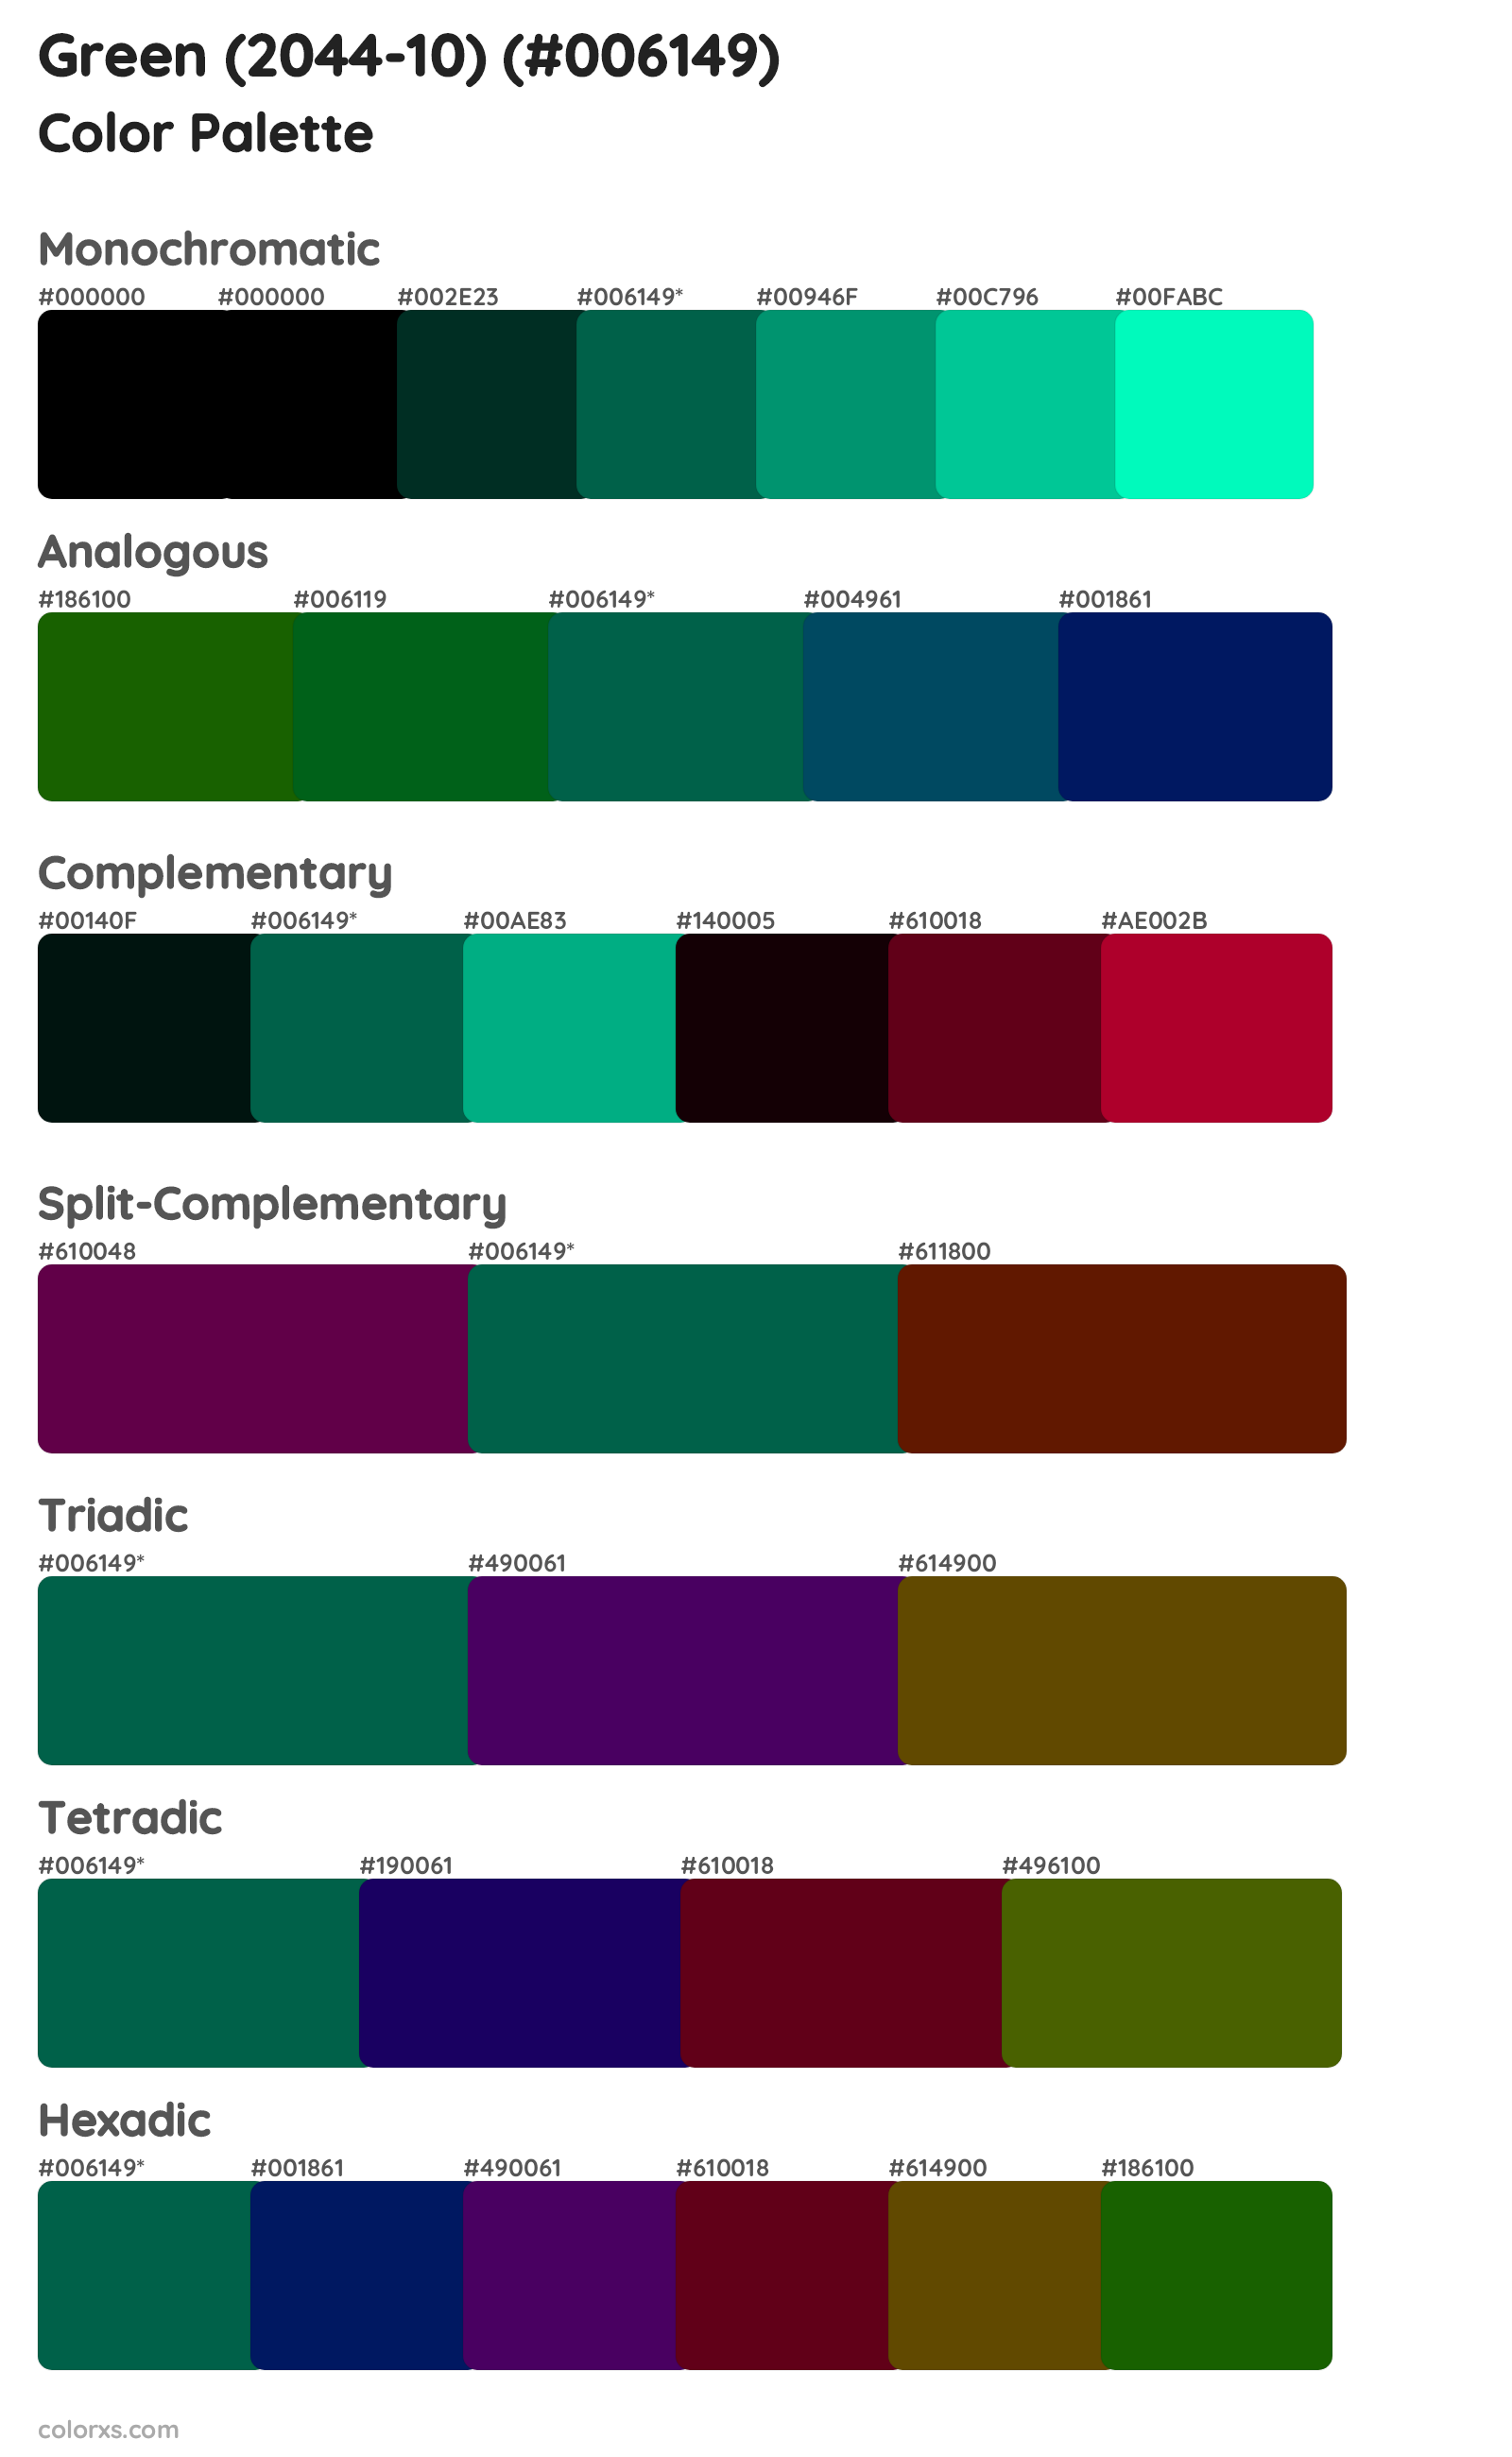 Green (2044-10) Color Scheme Palettes